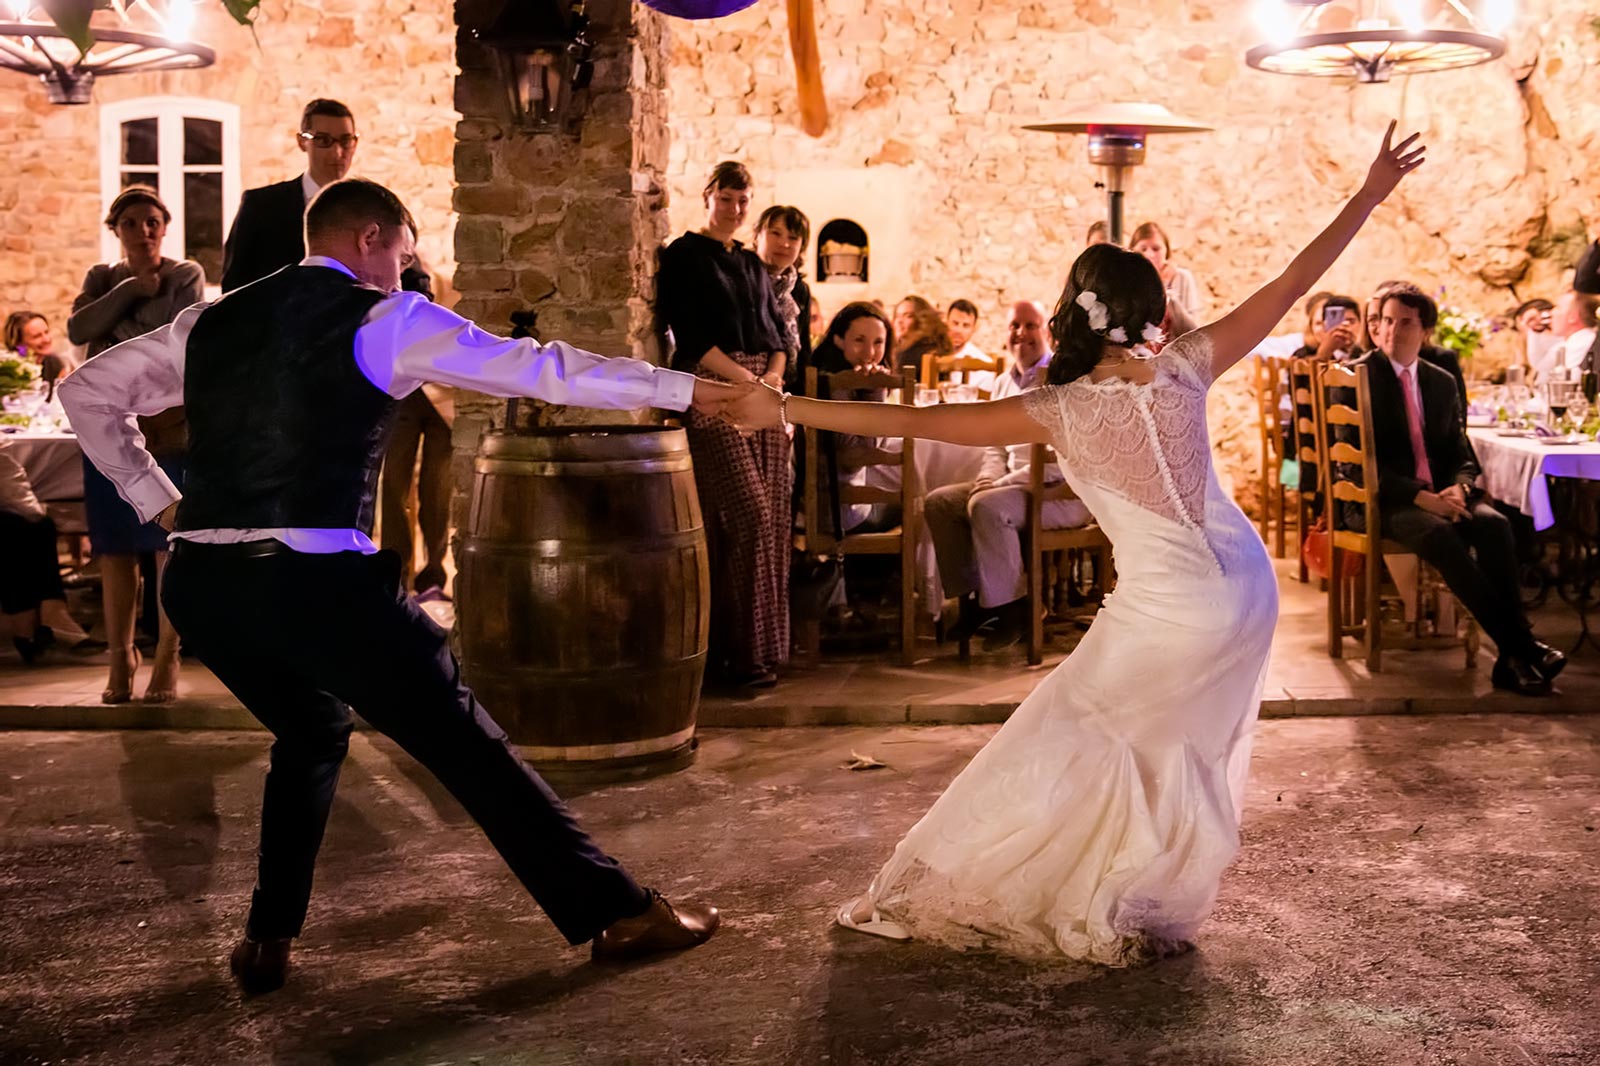 Песни под танцы на свадьбу. Свадебный танец молодоженов. Свадебный танец жениха и невесты. Танцы на свадьбе. Медленный свадебный танец.